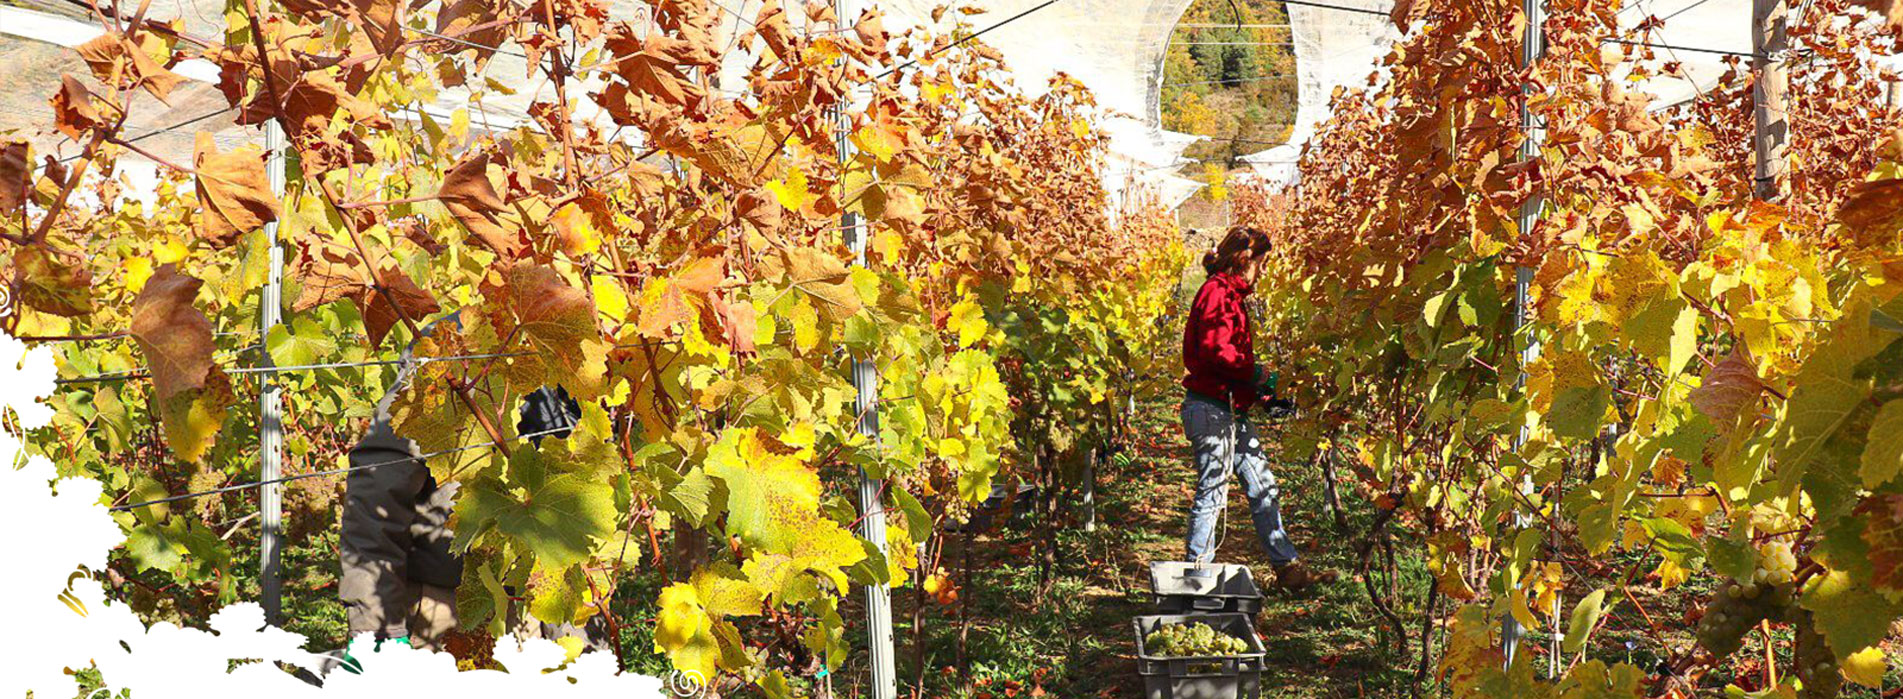 Foto de una hilera de viñas cuyas hojas en la parte superior empiezan a teñirse con los colores propios del otoño. Es un símbolo del cambio de hoja en el Pirineo, uno de los fenómenos más espectaculares en el paisaje pirenaico. Pilar y Ernest, dueños de Bal Minuta, están recogiendo a mano la uva del viñedo otoñal